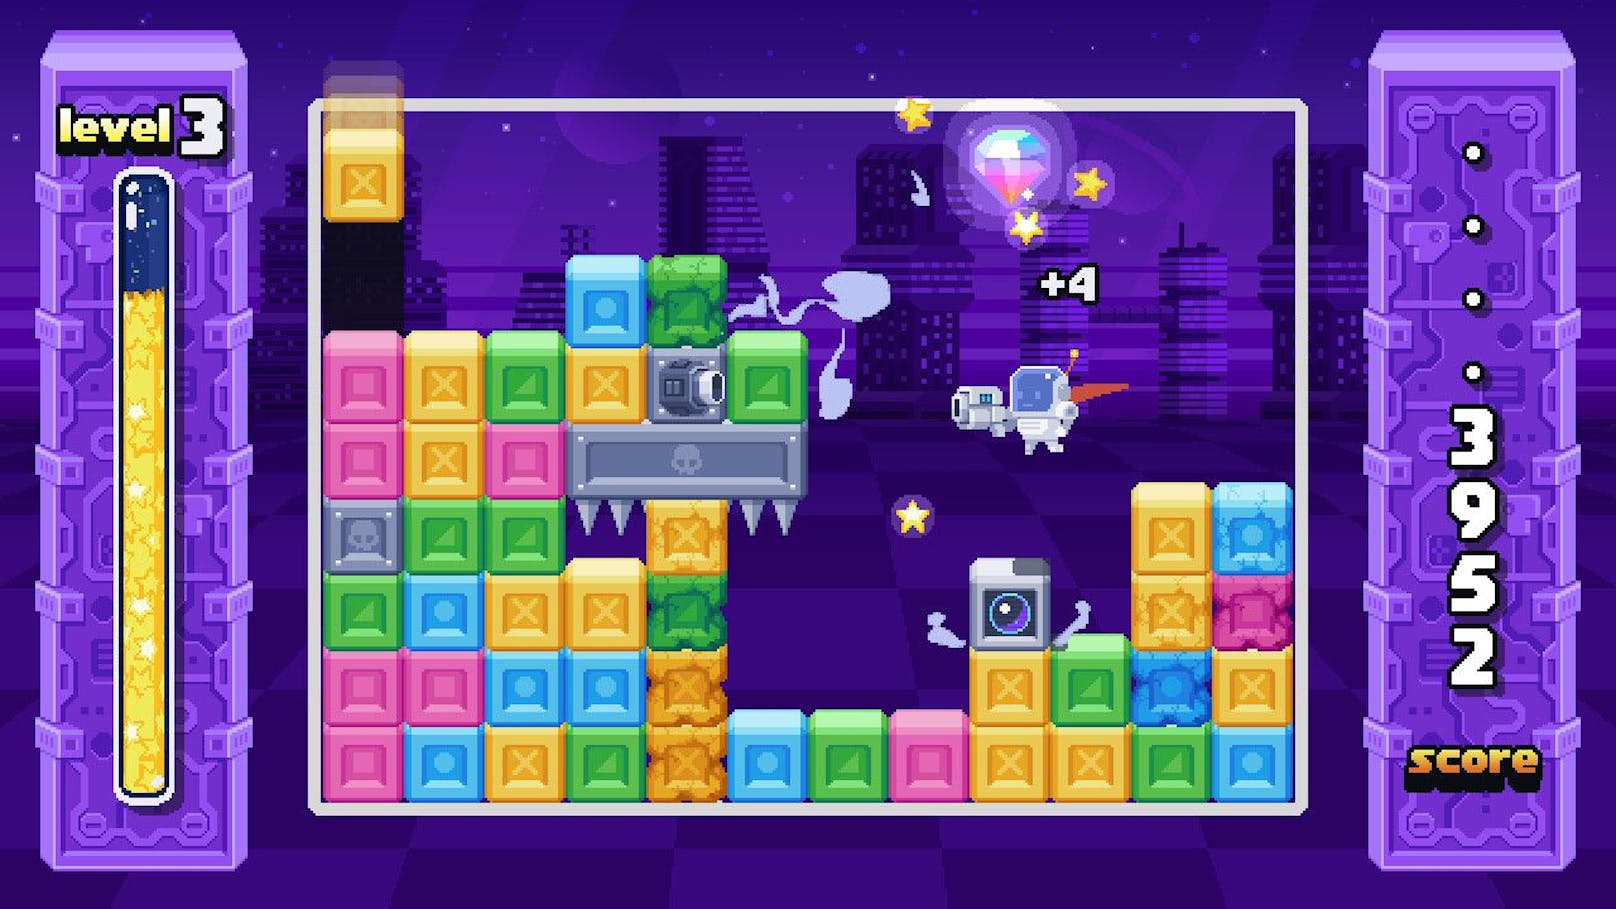 ... von oben herab, die farblich angeordnet werden sollen. Zu "Tetris 2.0" macht das Game aber, dass es andererseits auch eine kleine Astronauten-Spielfigur gibt, die ...